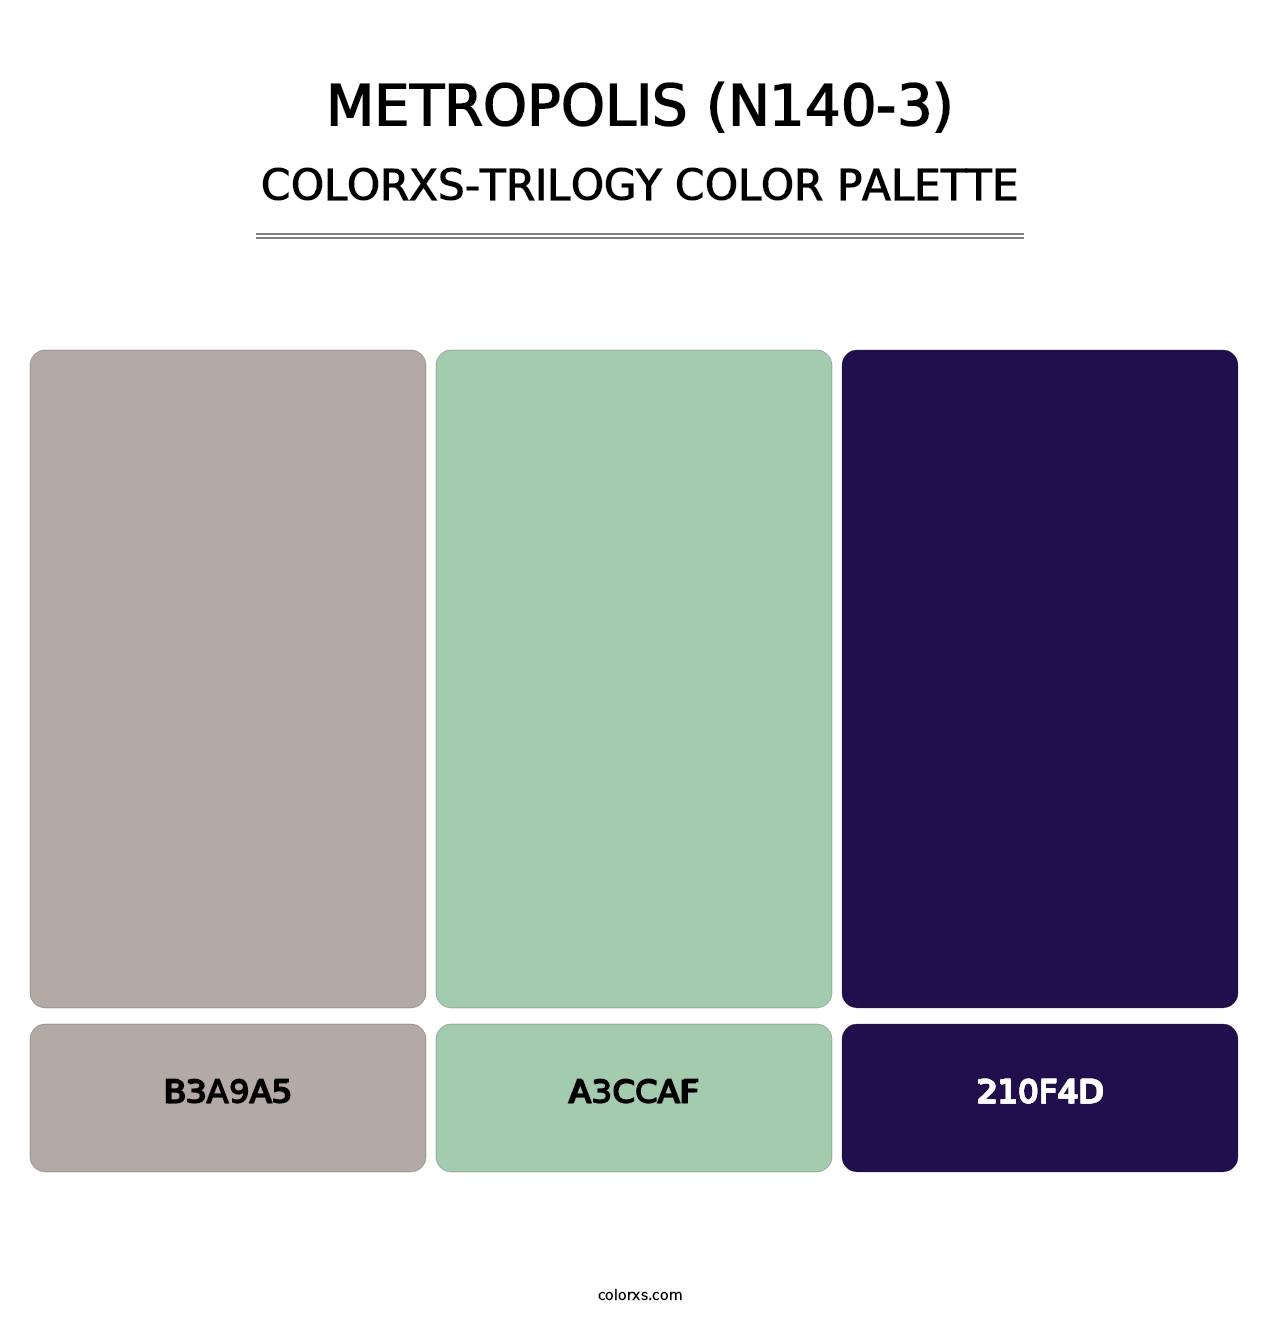 Metropolis (N140-3) - Colorxs Trilogy Palette